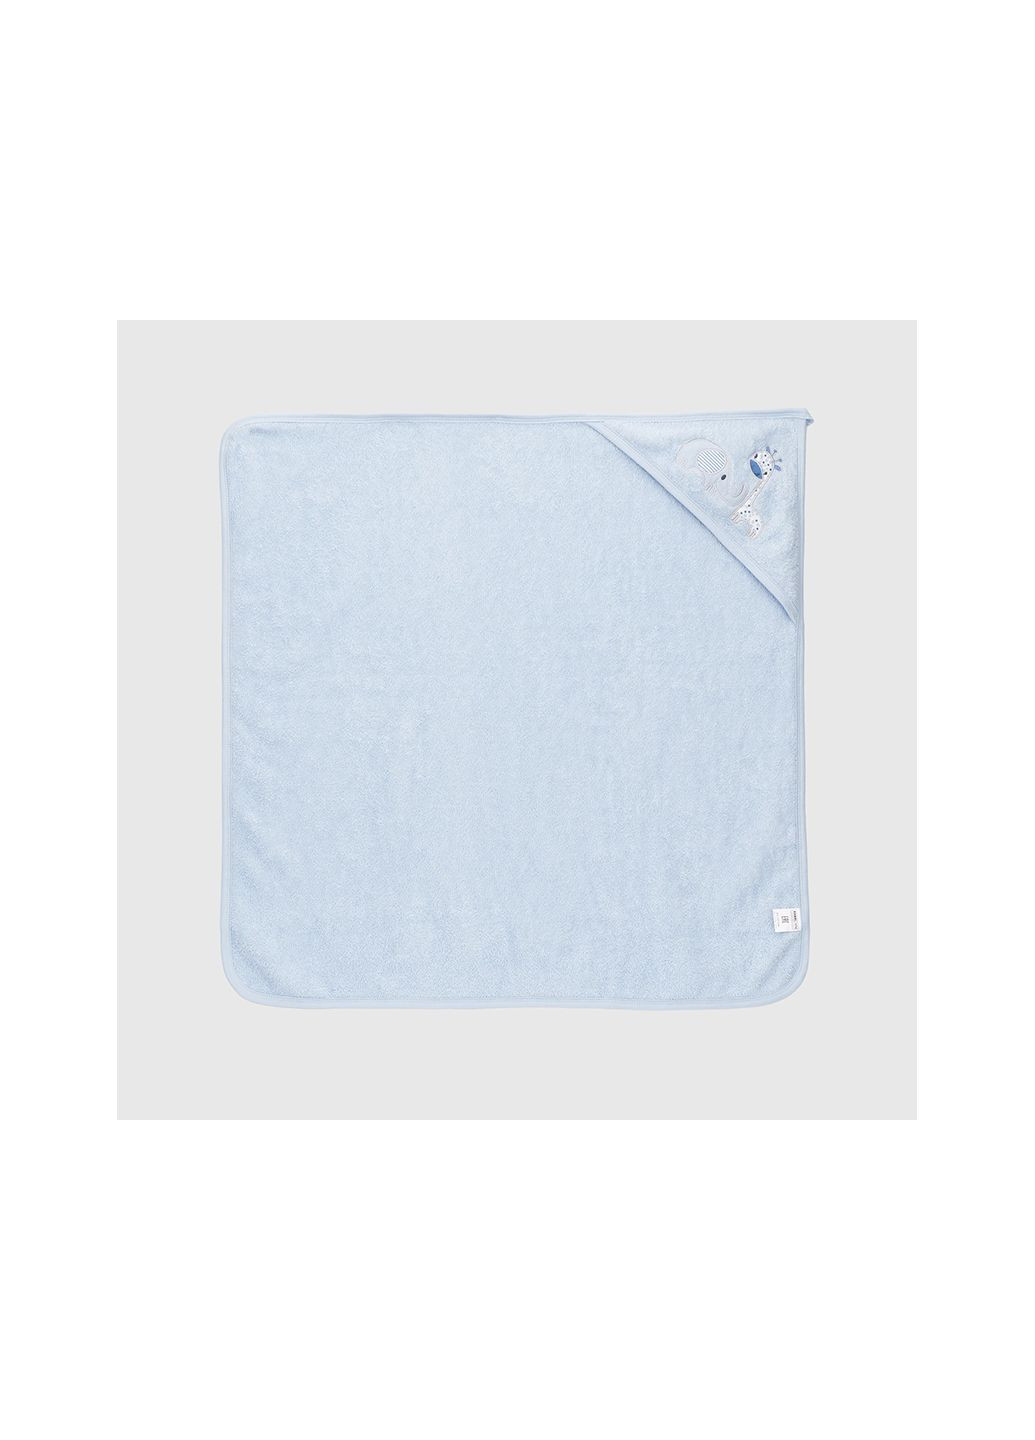 Ramel полотенце голубой производство - Турция